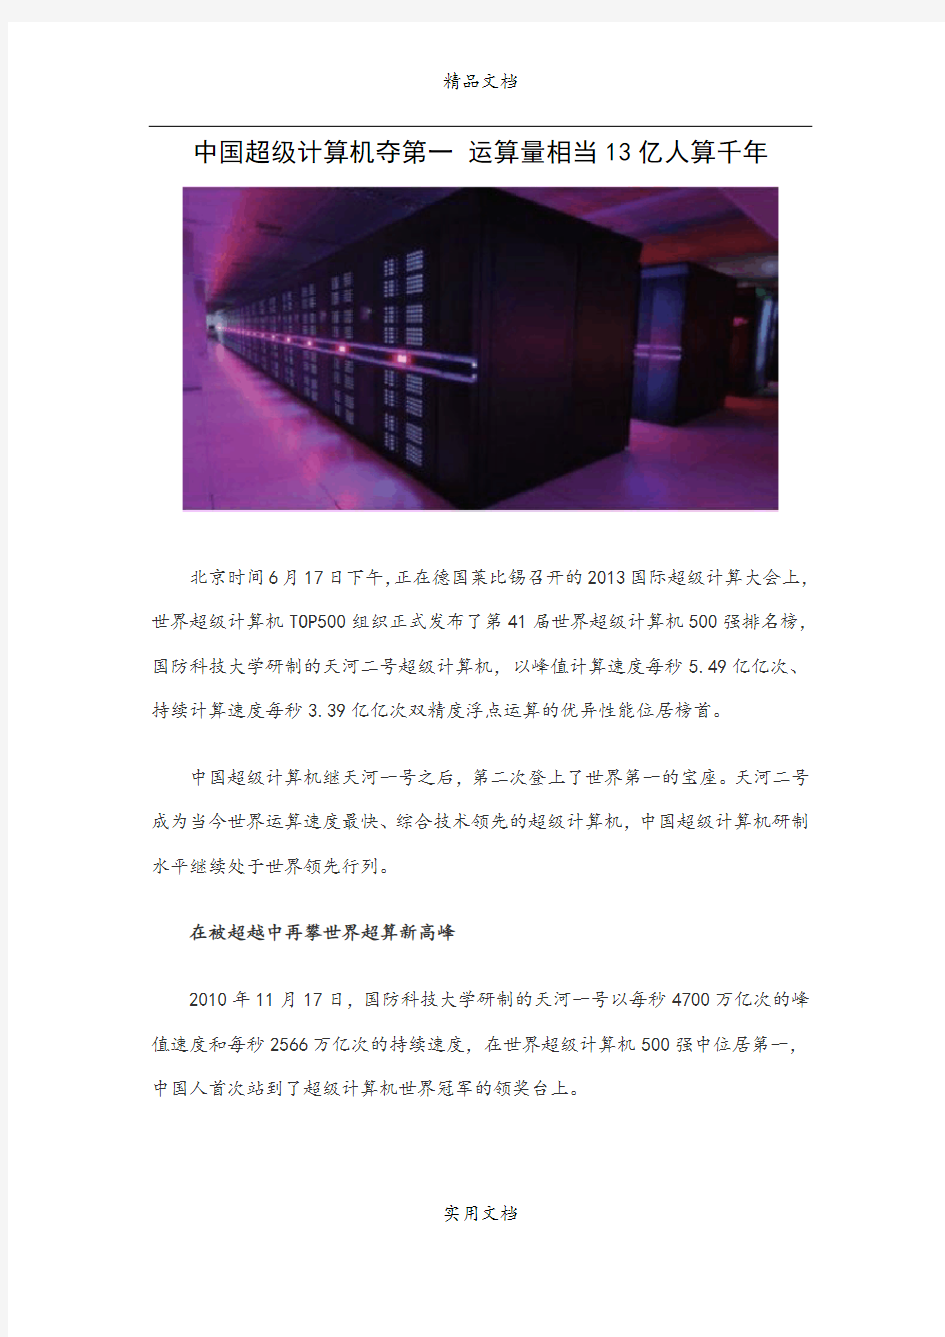 中国超级计算机夺第一 运算量相当13亿人算千年